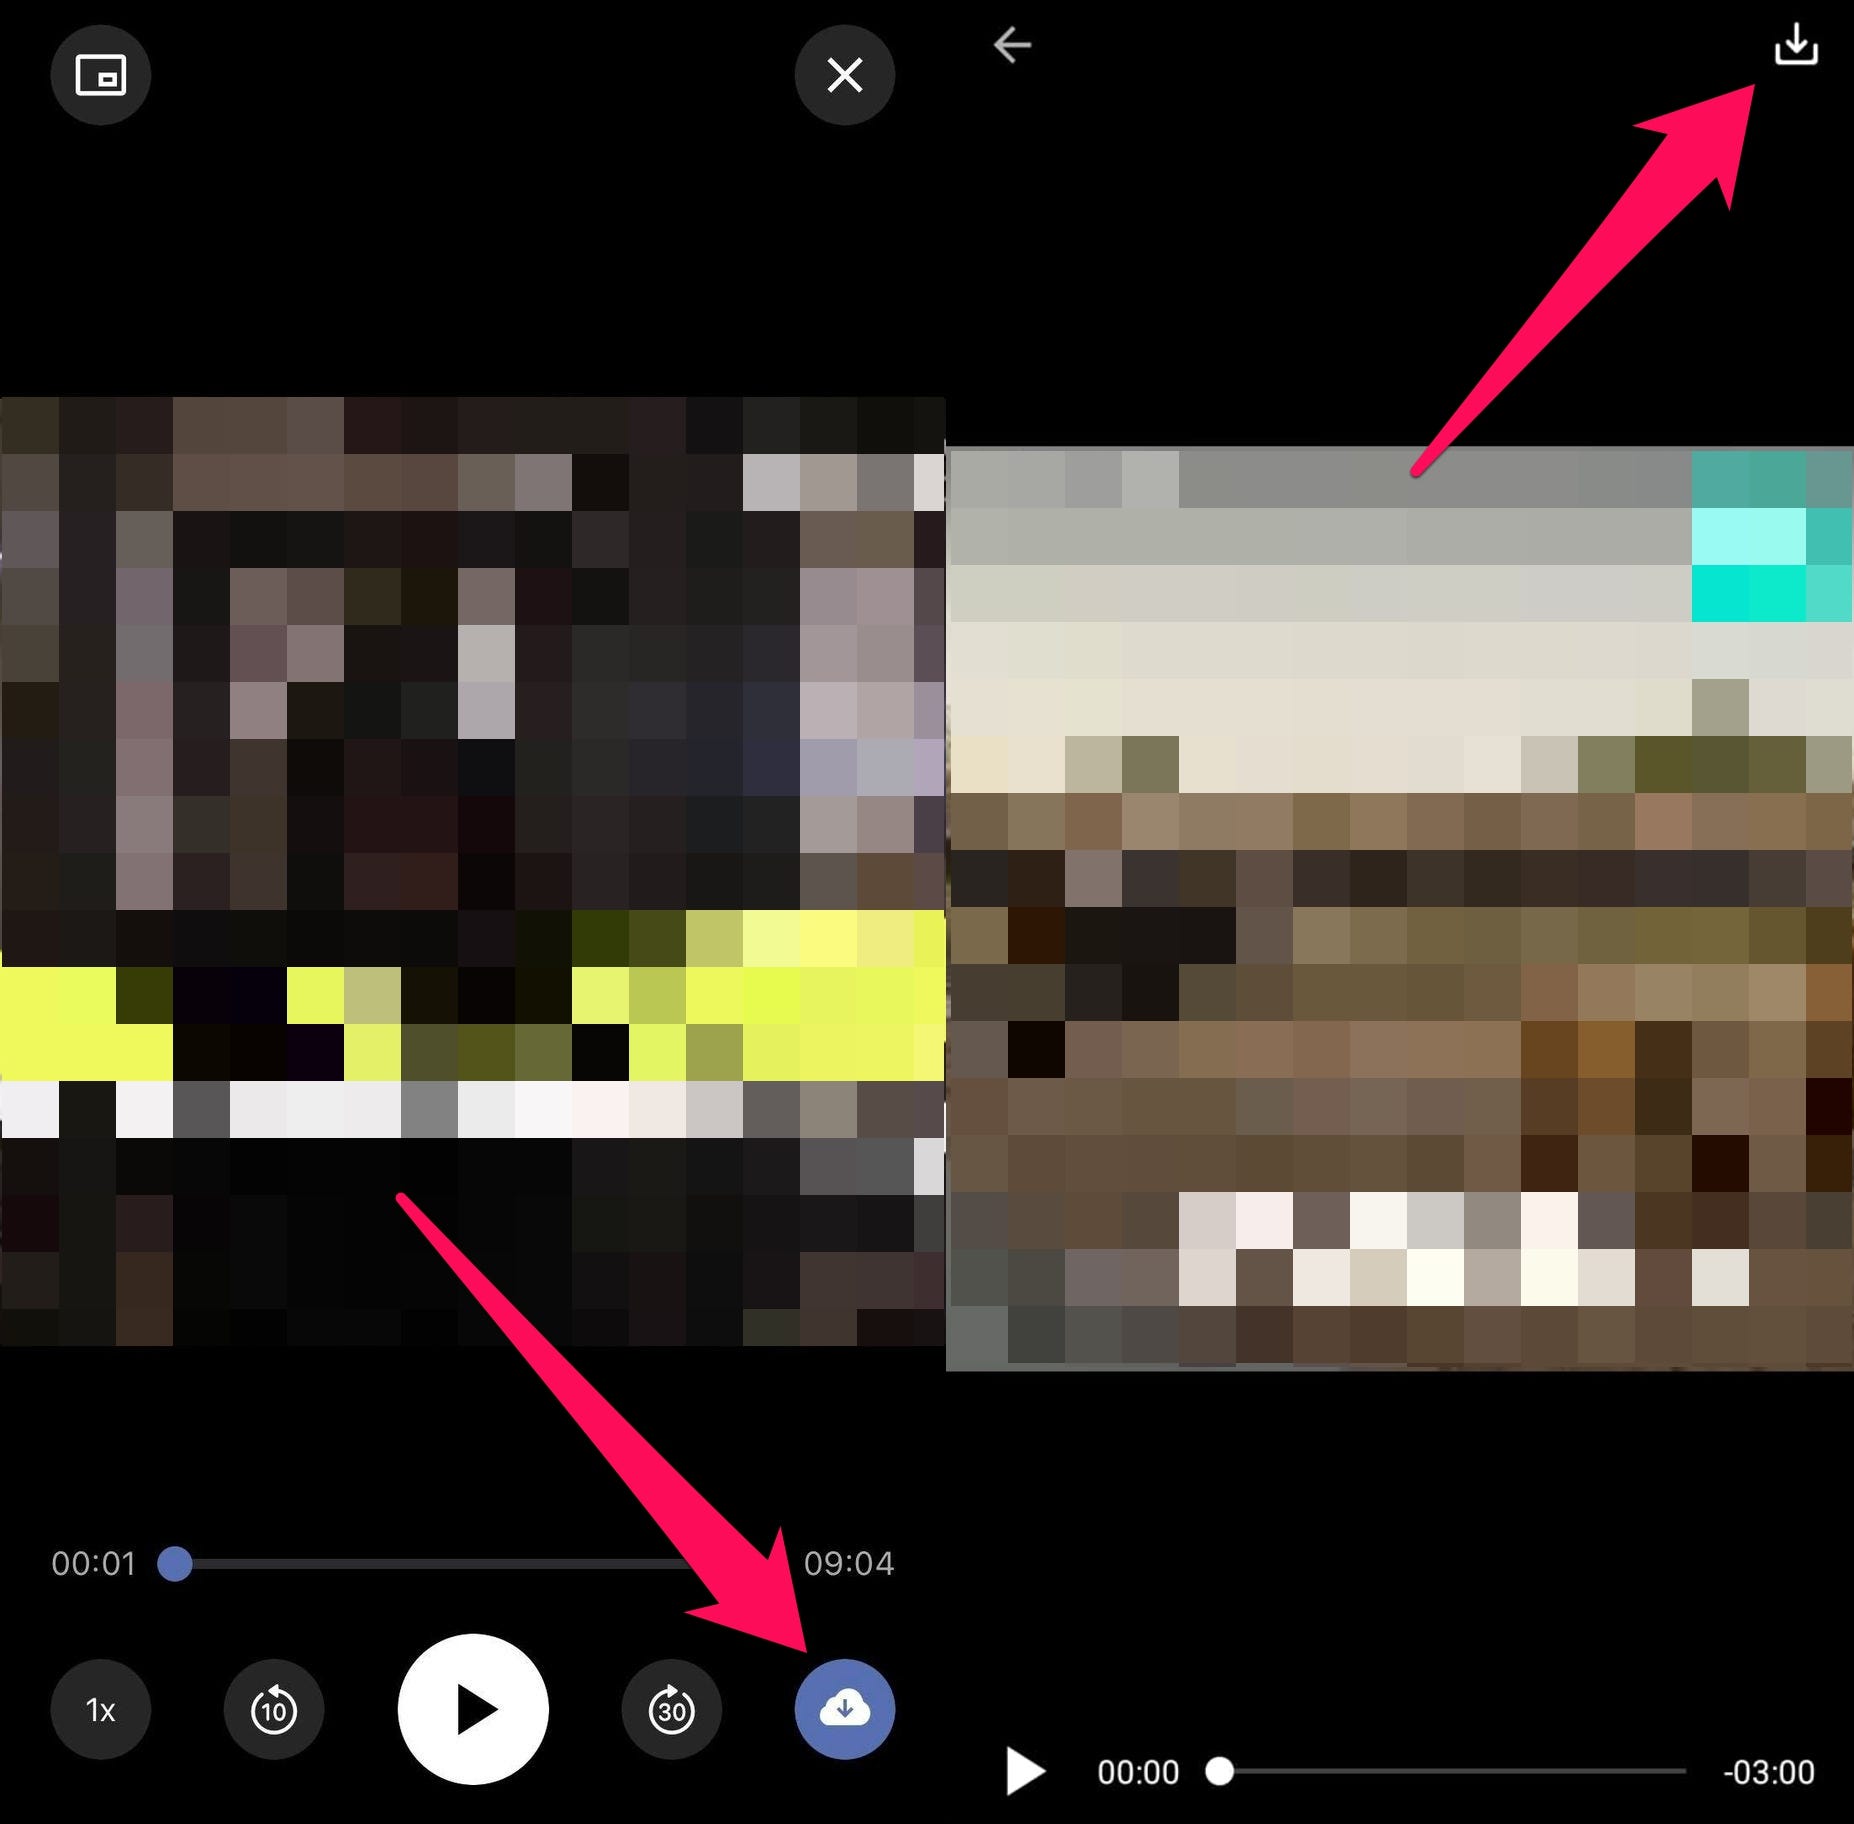 Ein kombiniertes Bild des Friendly Social Browsers.  Das linke Bild zeigt den Friendly Social Browser auf einem iPhone, wobei der wolkenförmige Download-Button in der unteren rechten Ecke hervorgehoben ist.  Das rechte Bild zeigt den Friendly Social Browser auf einem Android-Gerät, wobei das Download-Symbol in einem Video hervorgehoben ist.